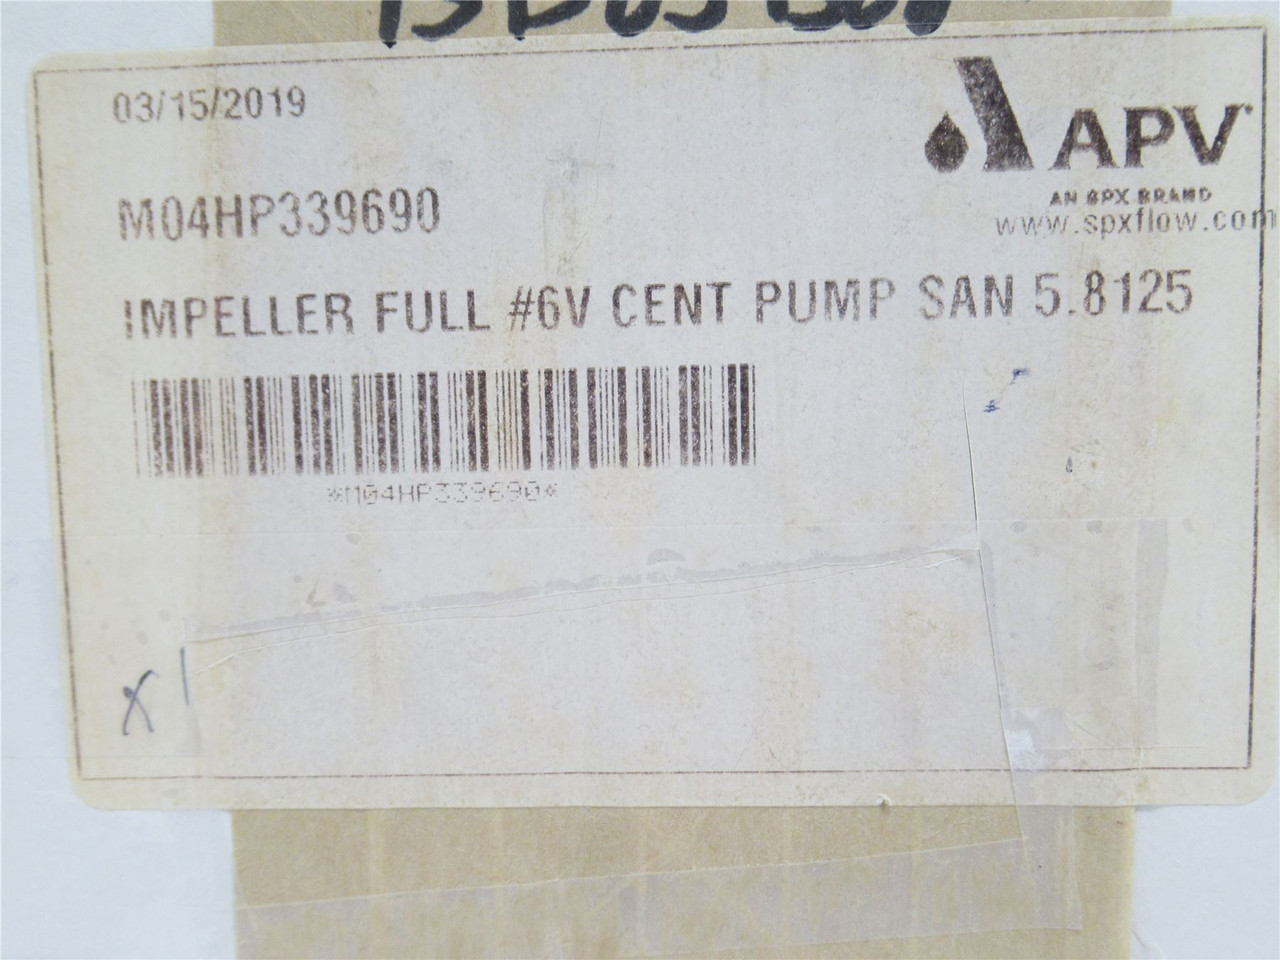 APV M04HP339690; Full Impeller #6V Cent Pump SAN 5.8125; SS